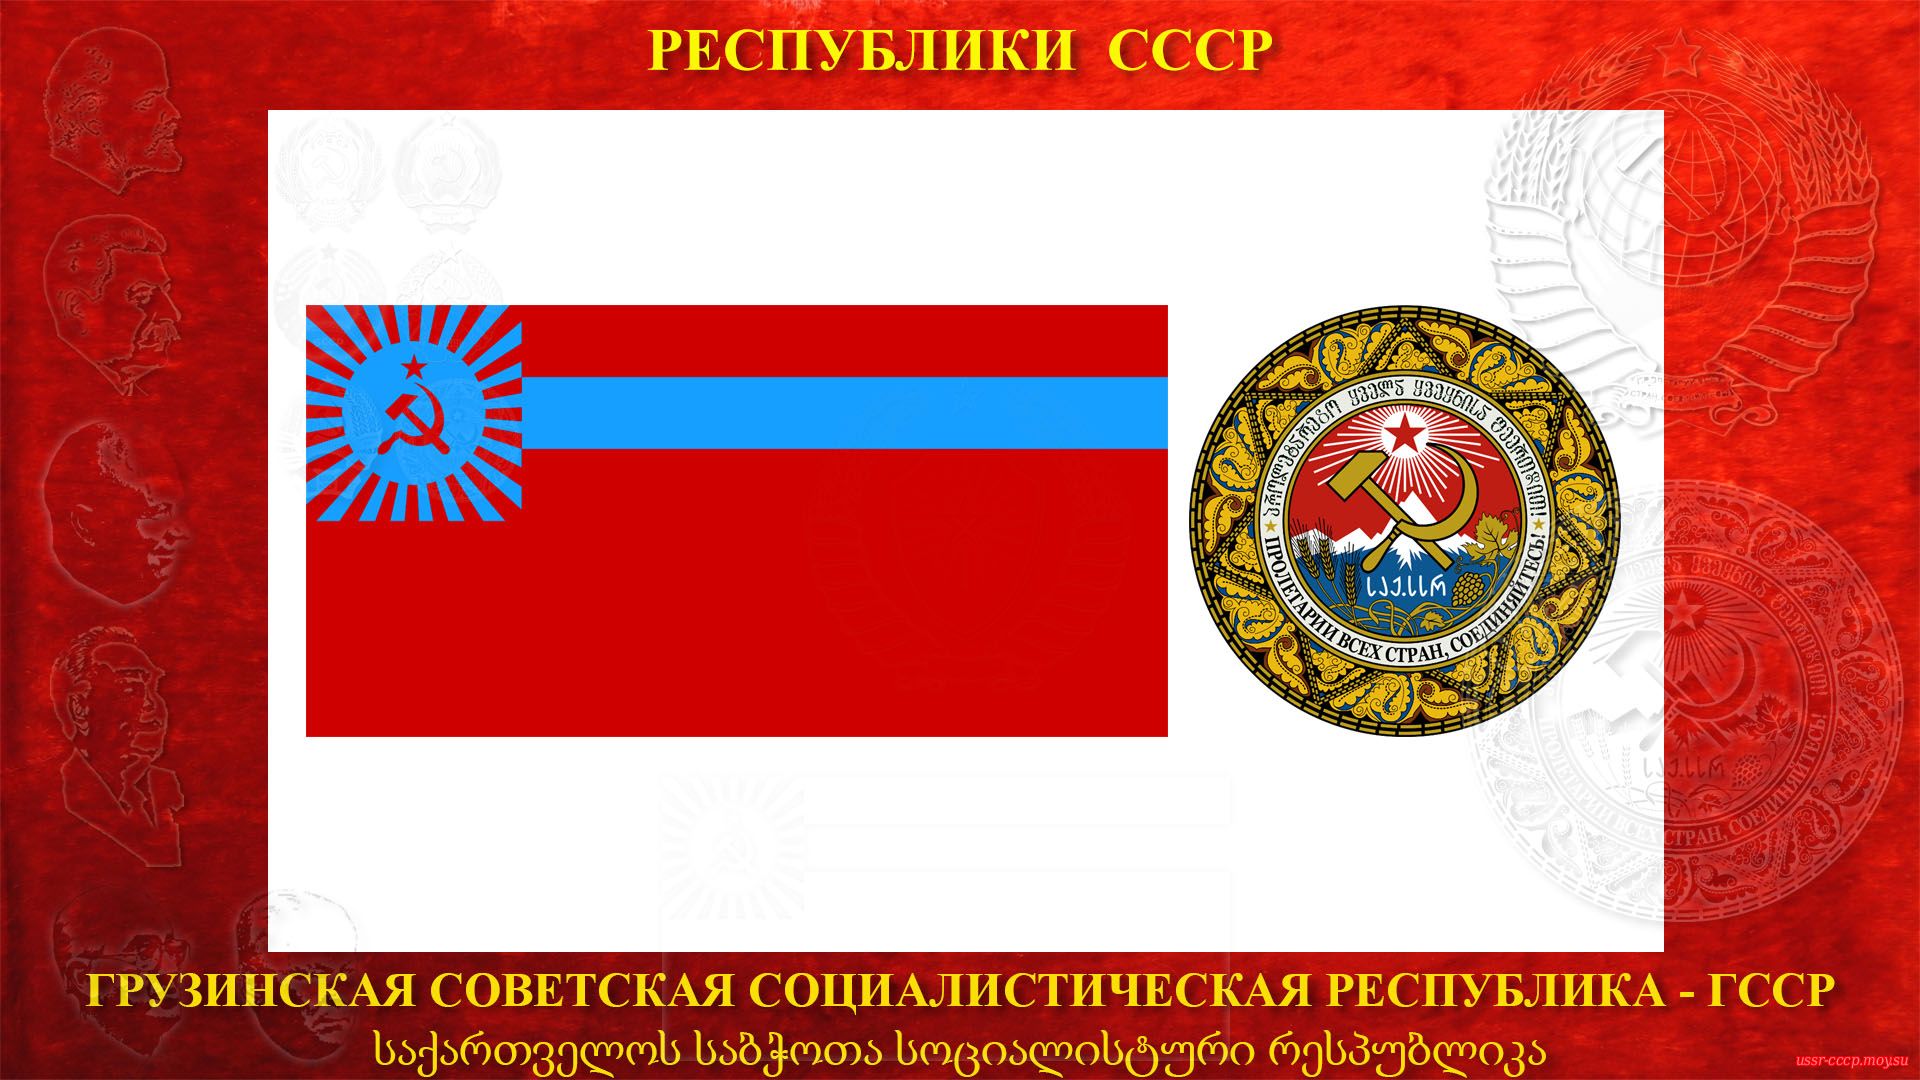 КССР — Казахская Советская Социалистическая Республика (05.12.1936 — де-юре)